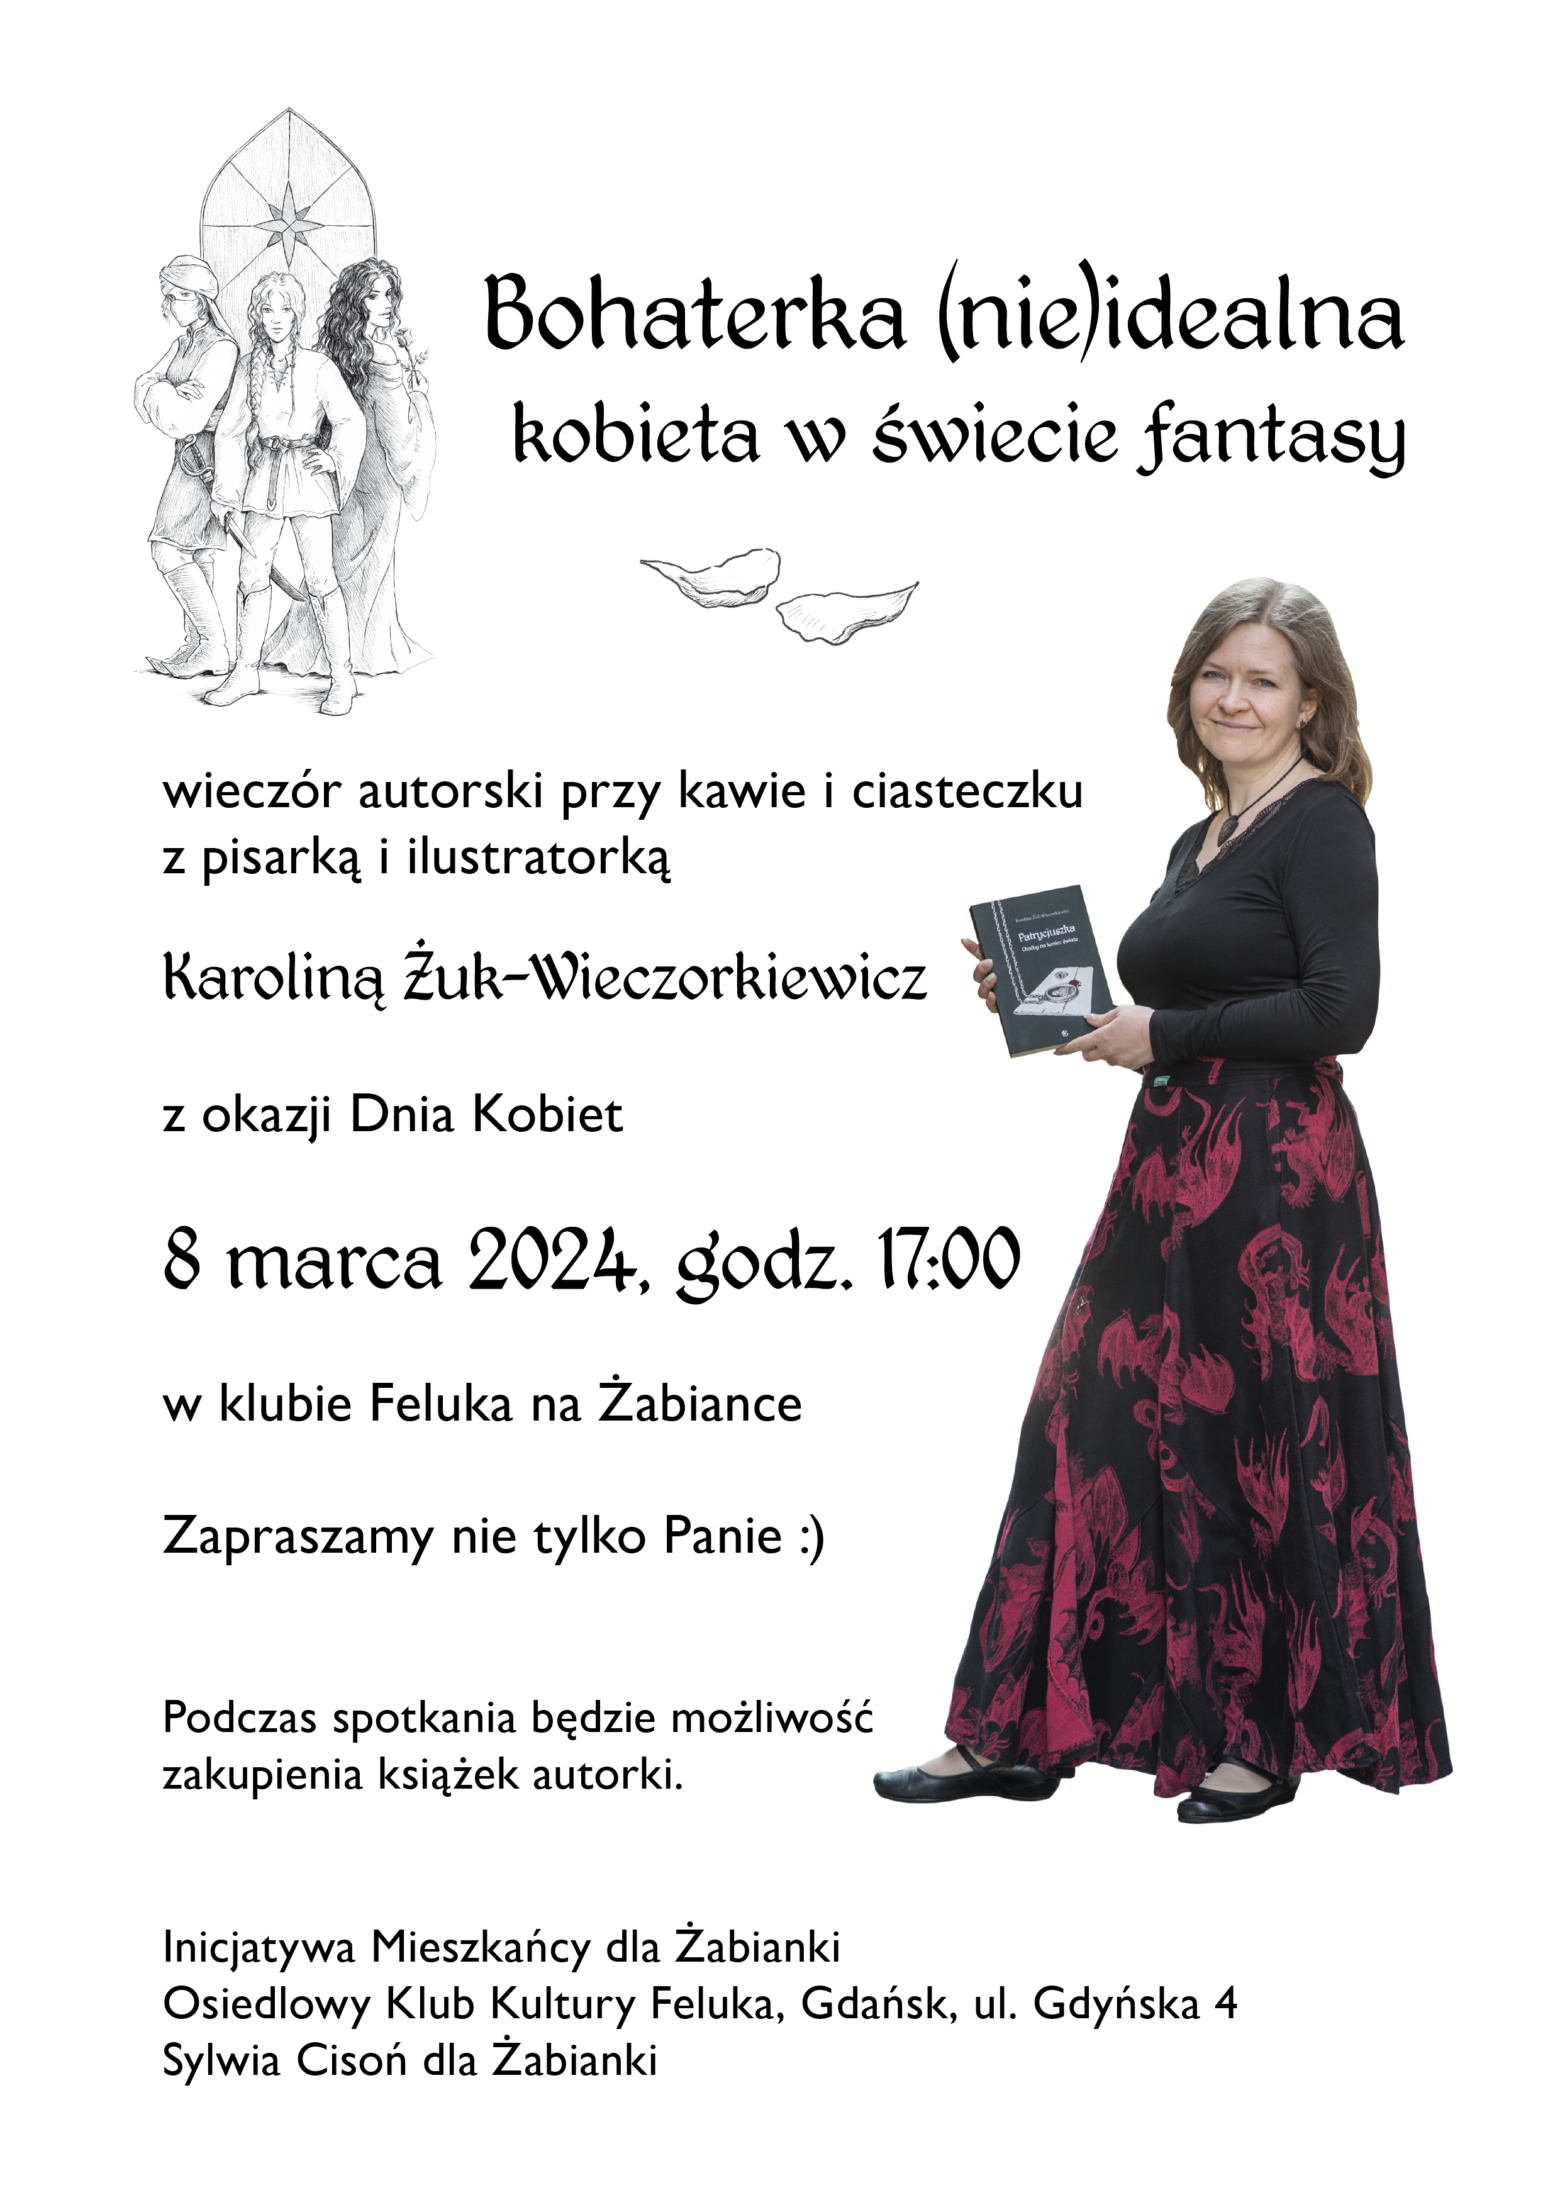 Bohaterka (nie)idealna – kobieta w świecie fantasy. Spotkanie 8 marca